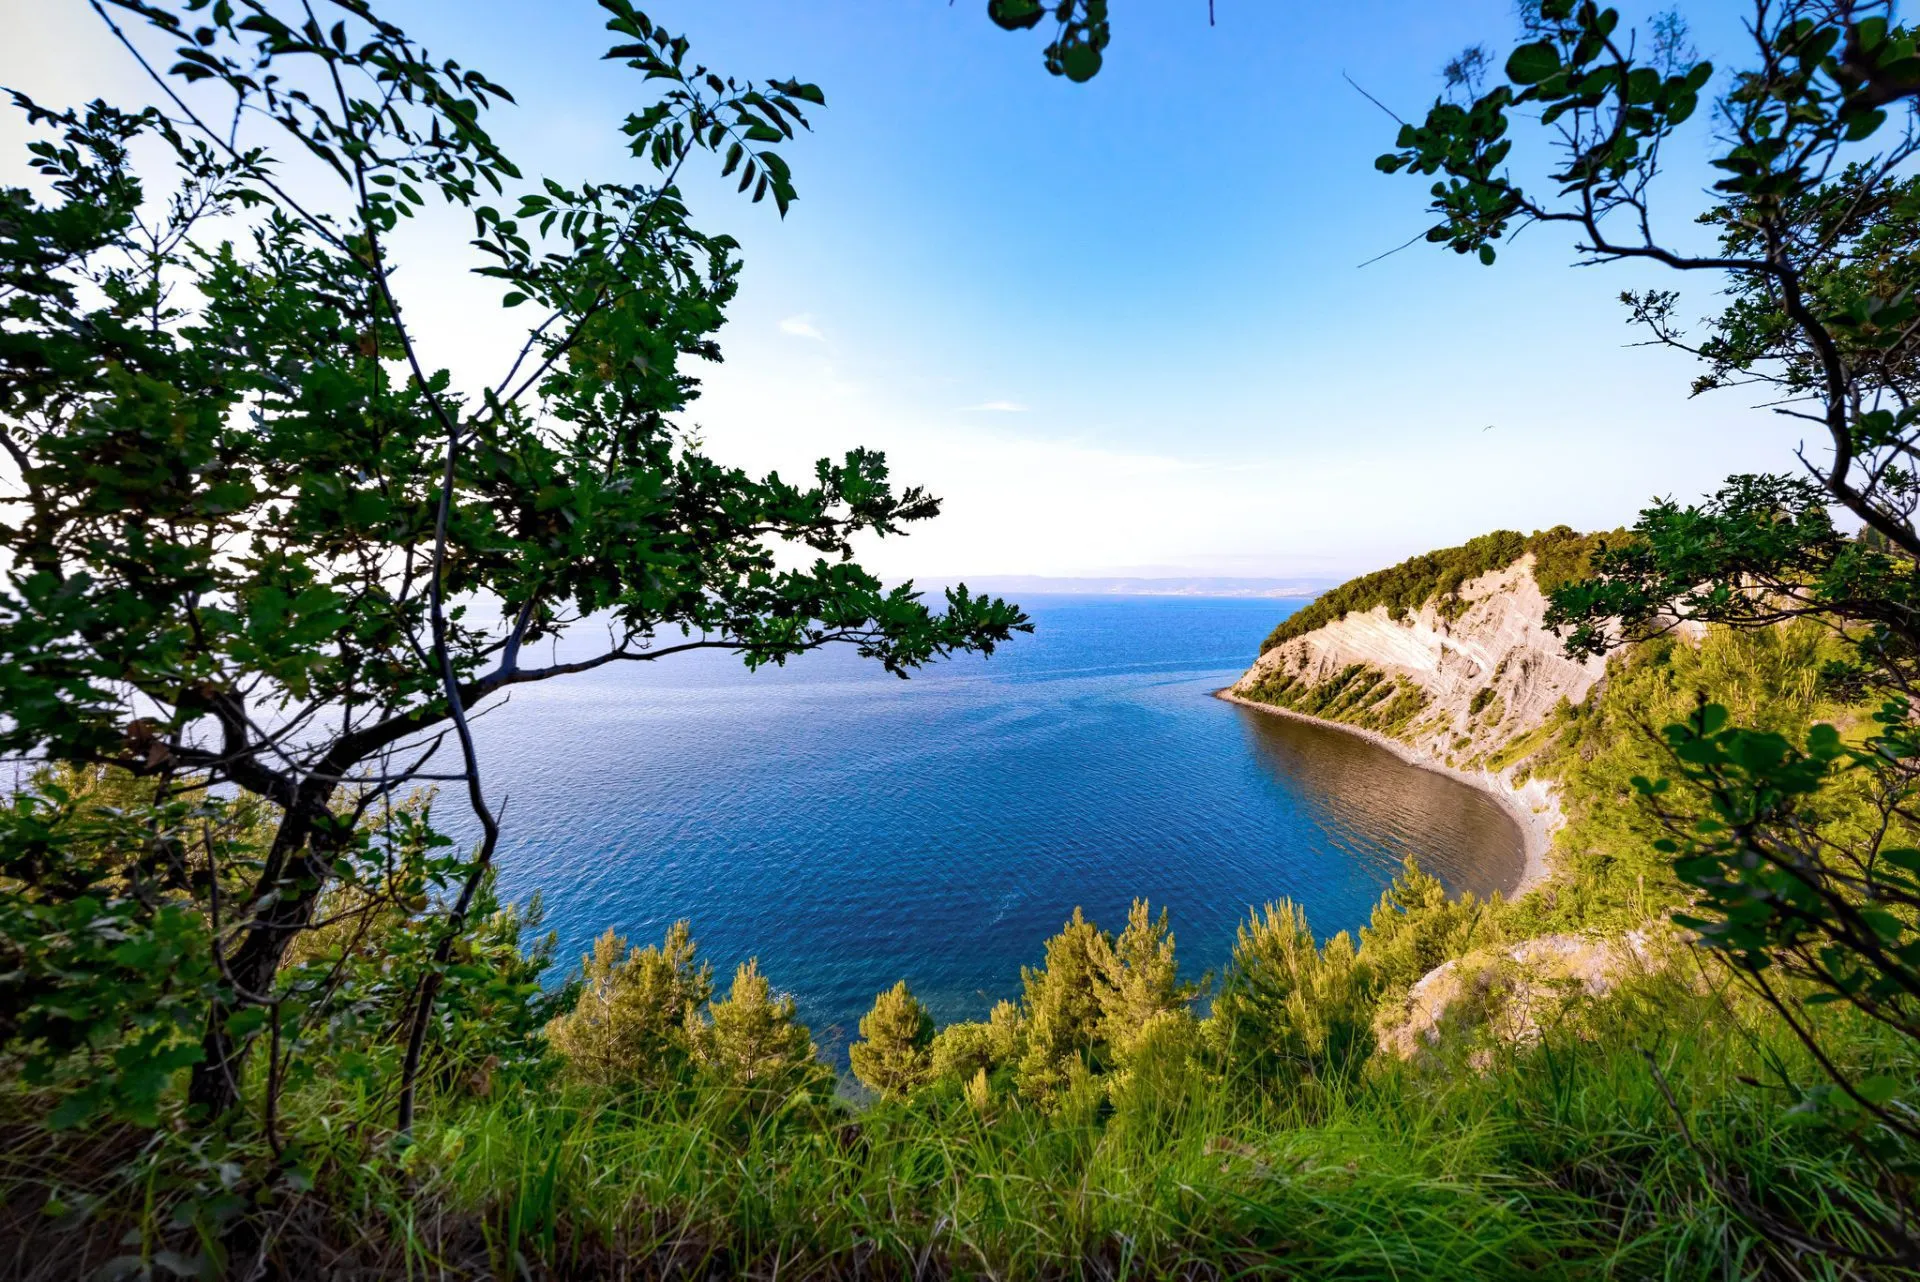 Strunjan-stranden på den slovenske kyst skaleret 1